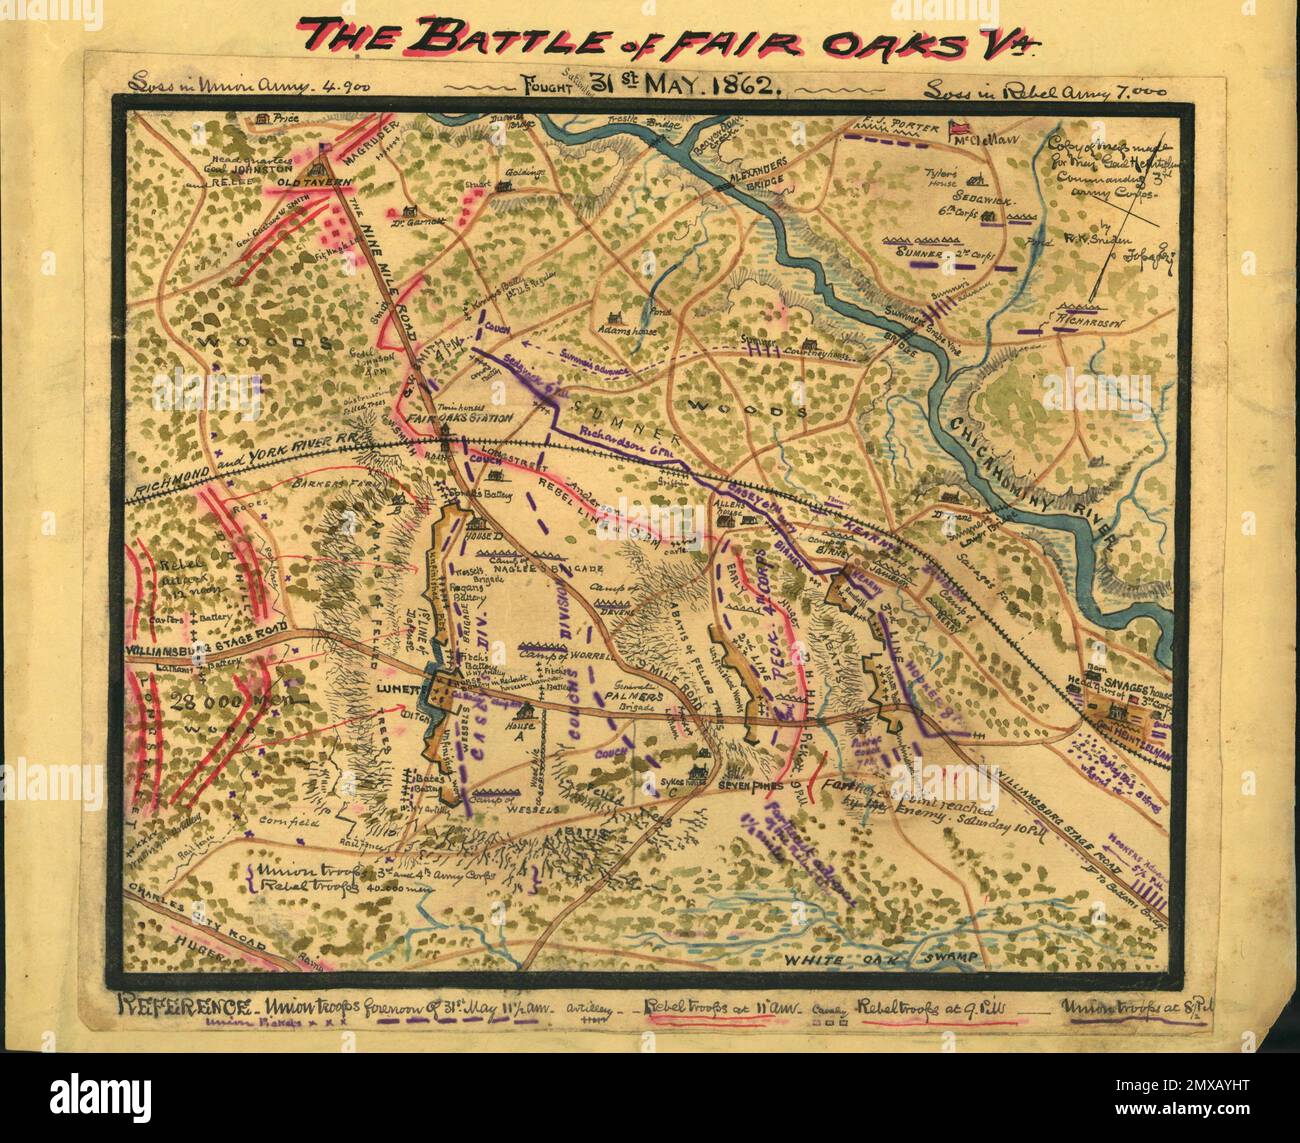 La Battaglia di sette pini (nota anche come Battaglia di Fair Oaks o Fair Oaks Station) si è svolta il 31 maggio e il 1 giugno 1862 nella contea di Henrico, in Virginia, come parte della campagna Peninsula della guerra civile americana. Fu il culmine di un'offensiva sulla penisola della Virginia guidata dal maggiore generale dell'Unione George McClellan, in cui l'esercito del Potomac raggiunse la periferia di Richmond. Questa immagine è una mappa della battaglia disegnata subito dopo la battaglia. Foto Stock